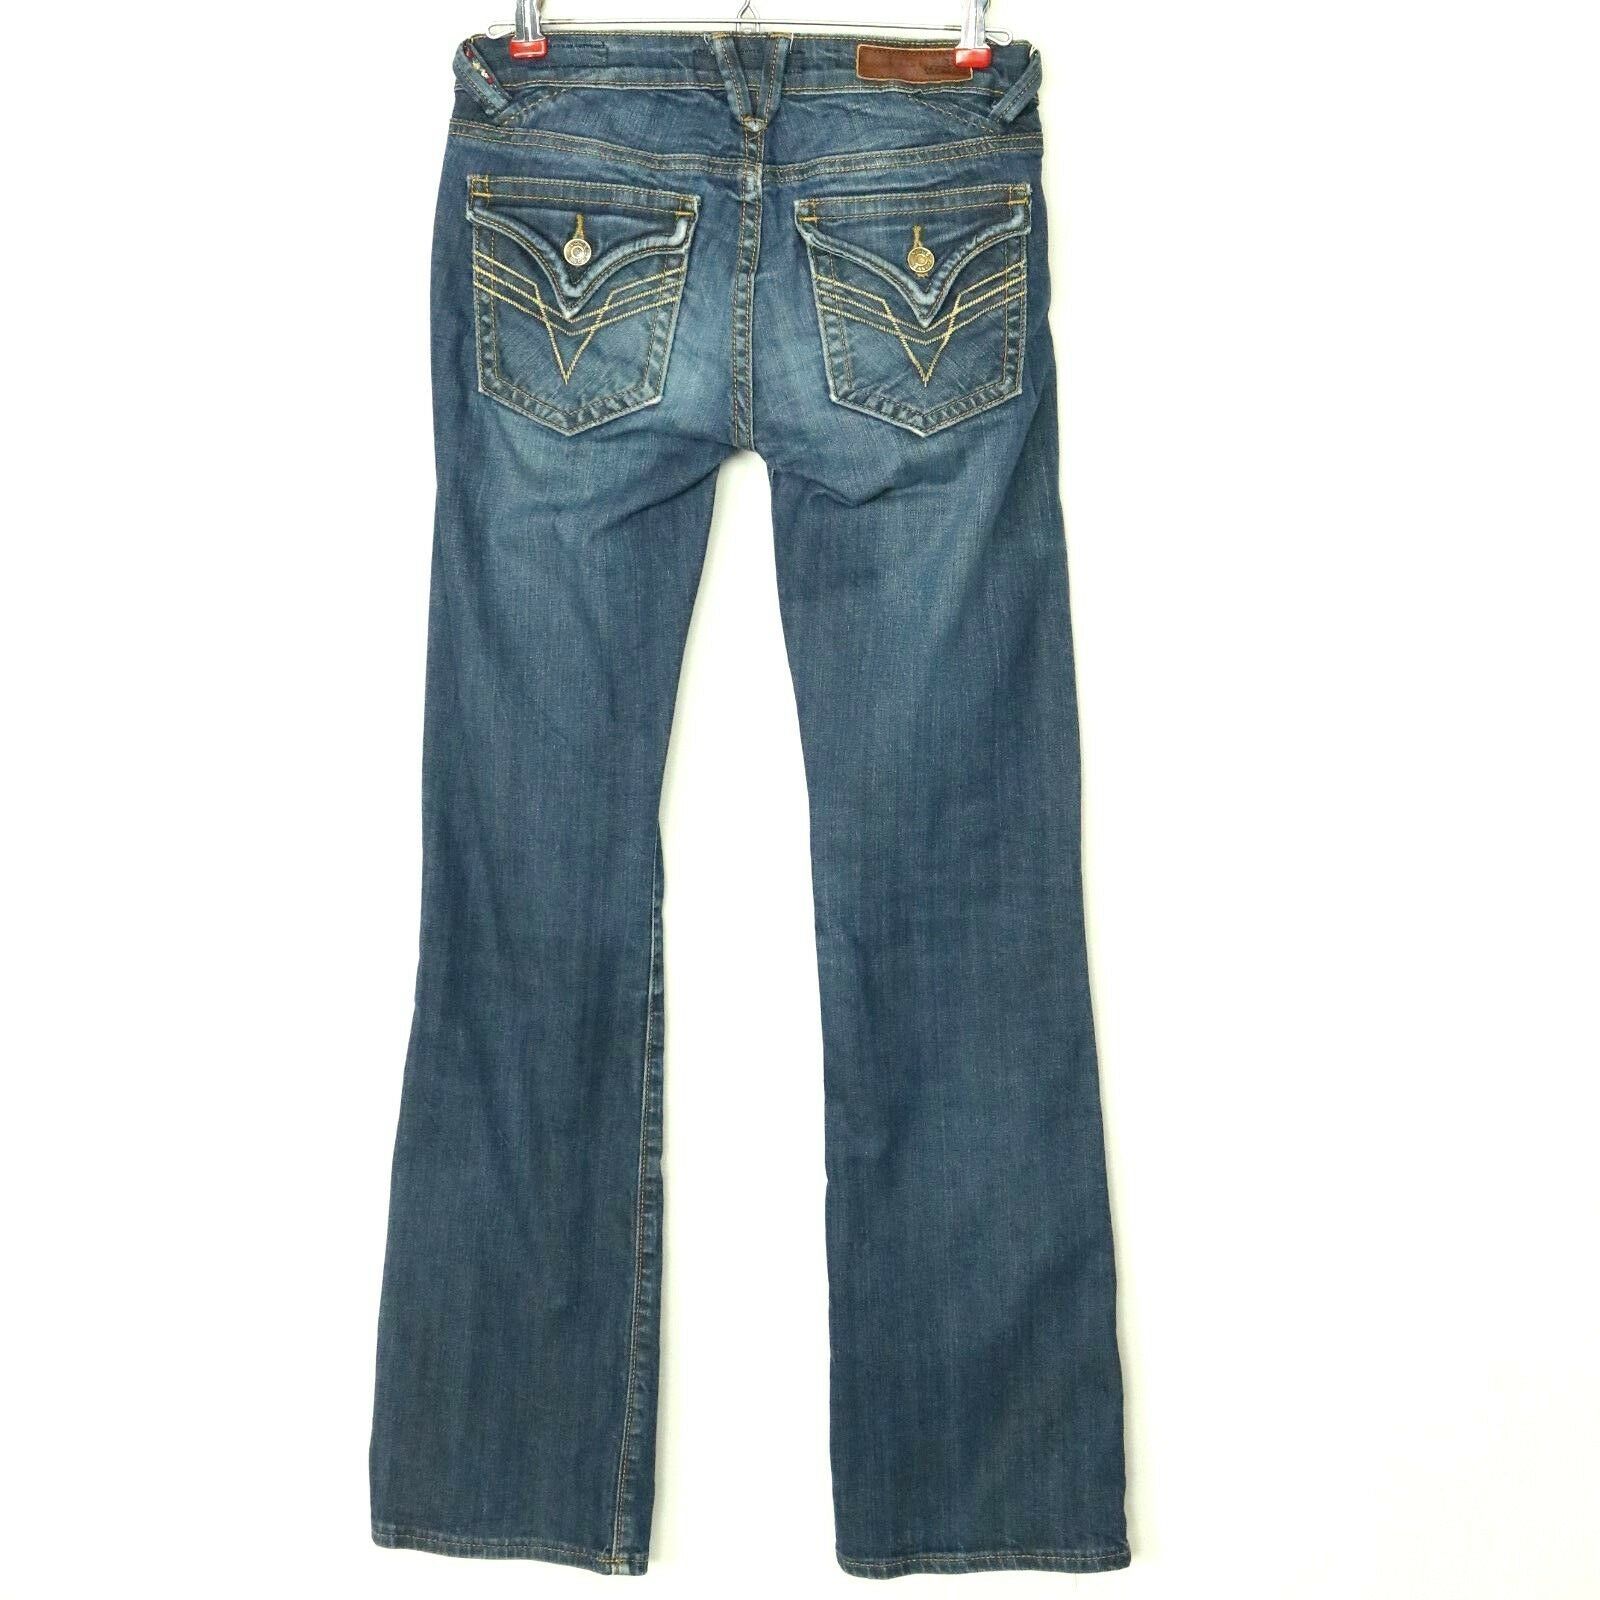 Vigoss Womens Jeans Bootcut Size 1 2 1/2 26 X 31 Stretch Button Flap ...